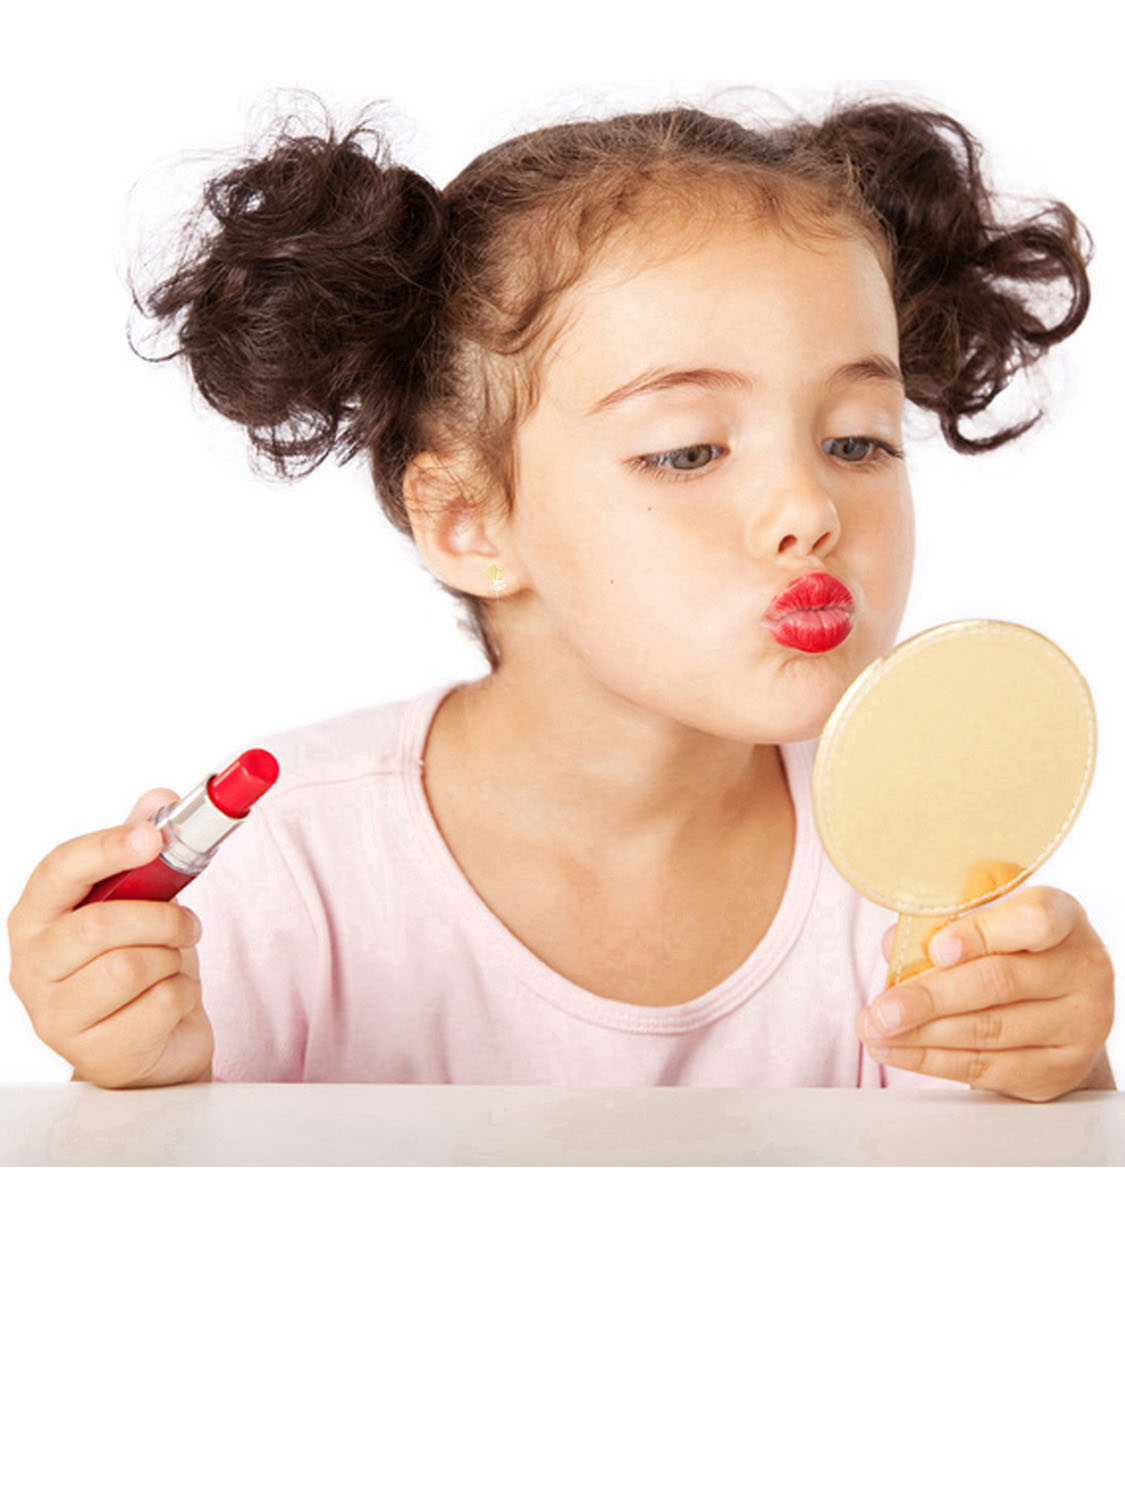 Kleines Mädchen mit Lippenstift betrachtet sich im Spiegel - Momente des Schenkens | Emotionsbild